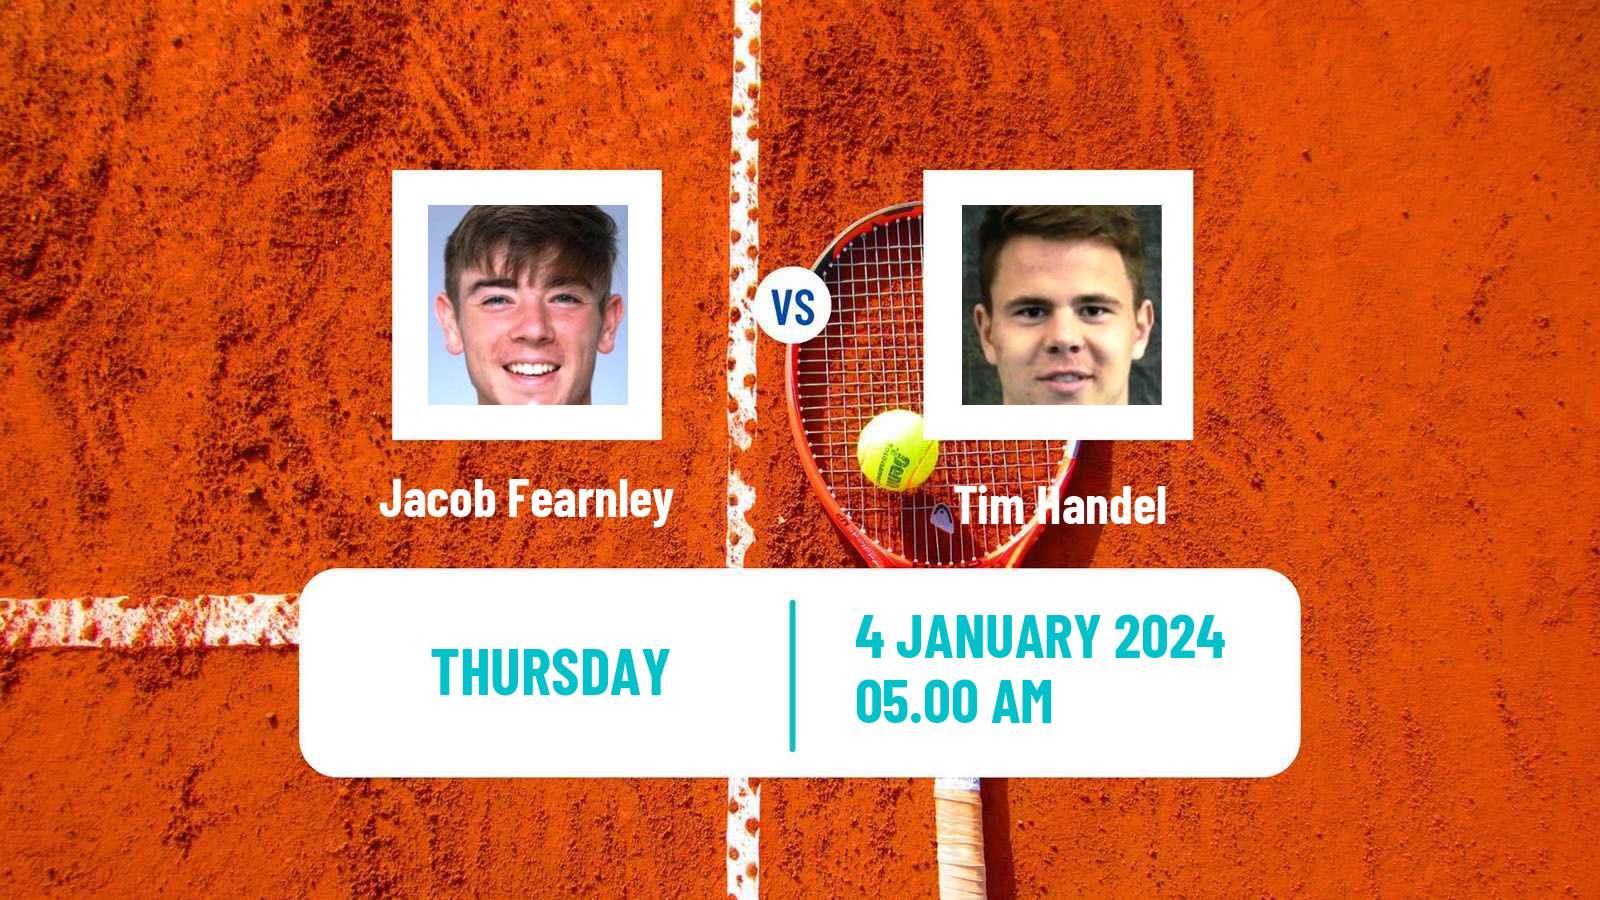 Tennis ITF M25 Esch Alzette Men Jacob Fearnley - Tim Handel